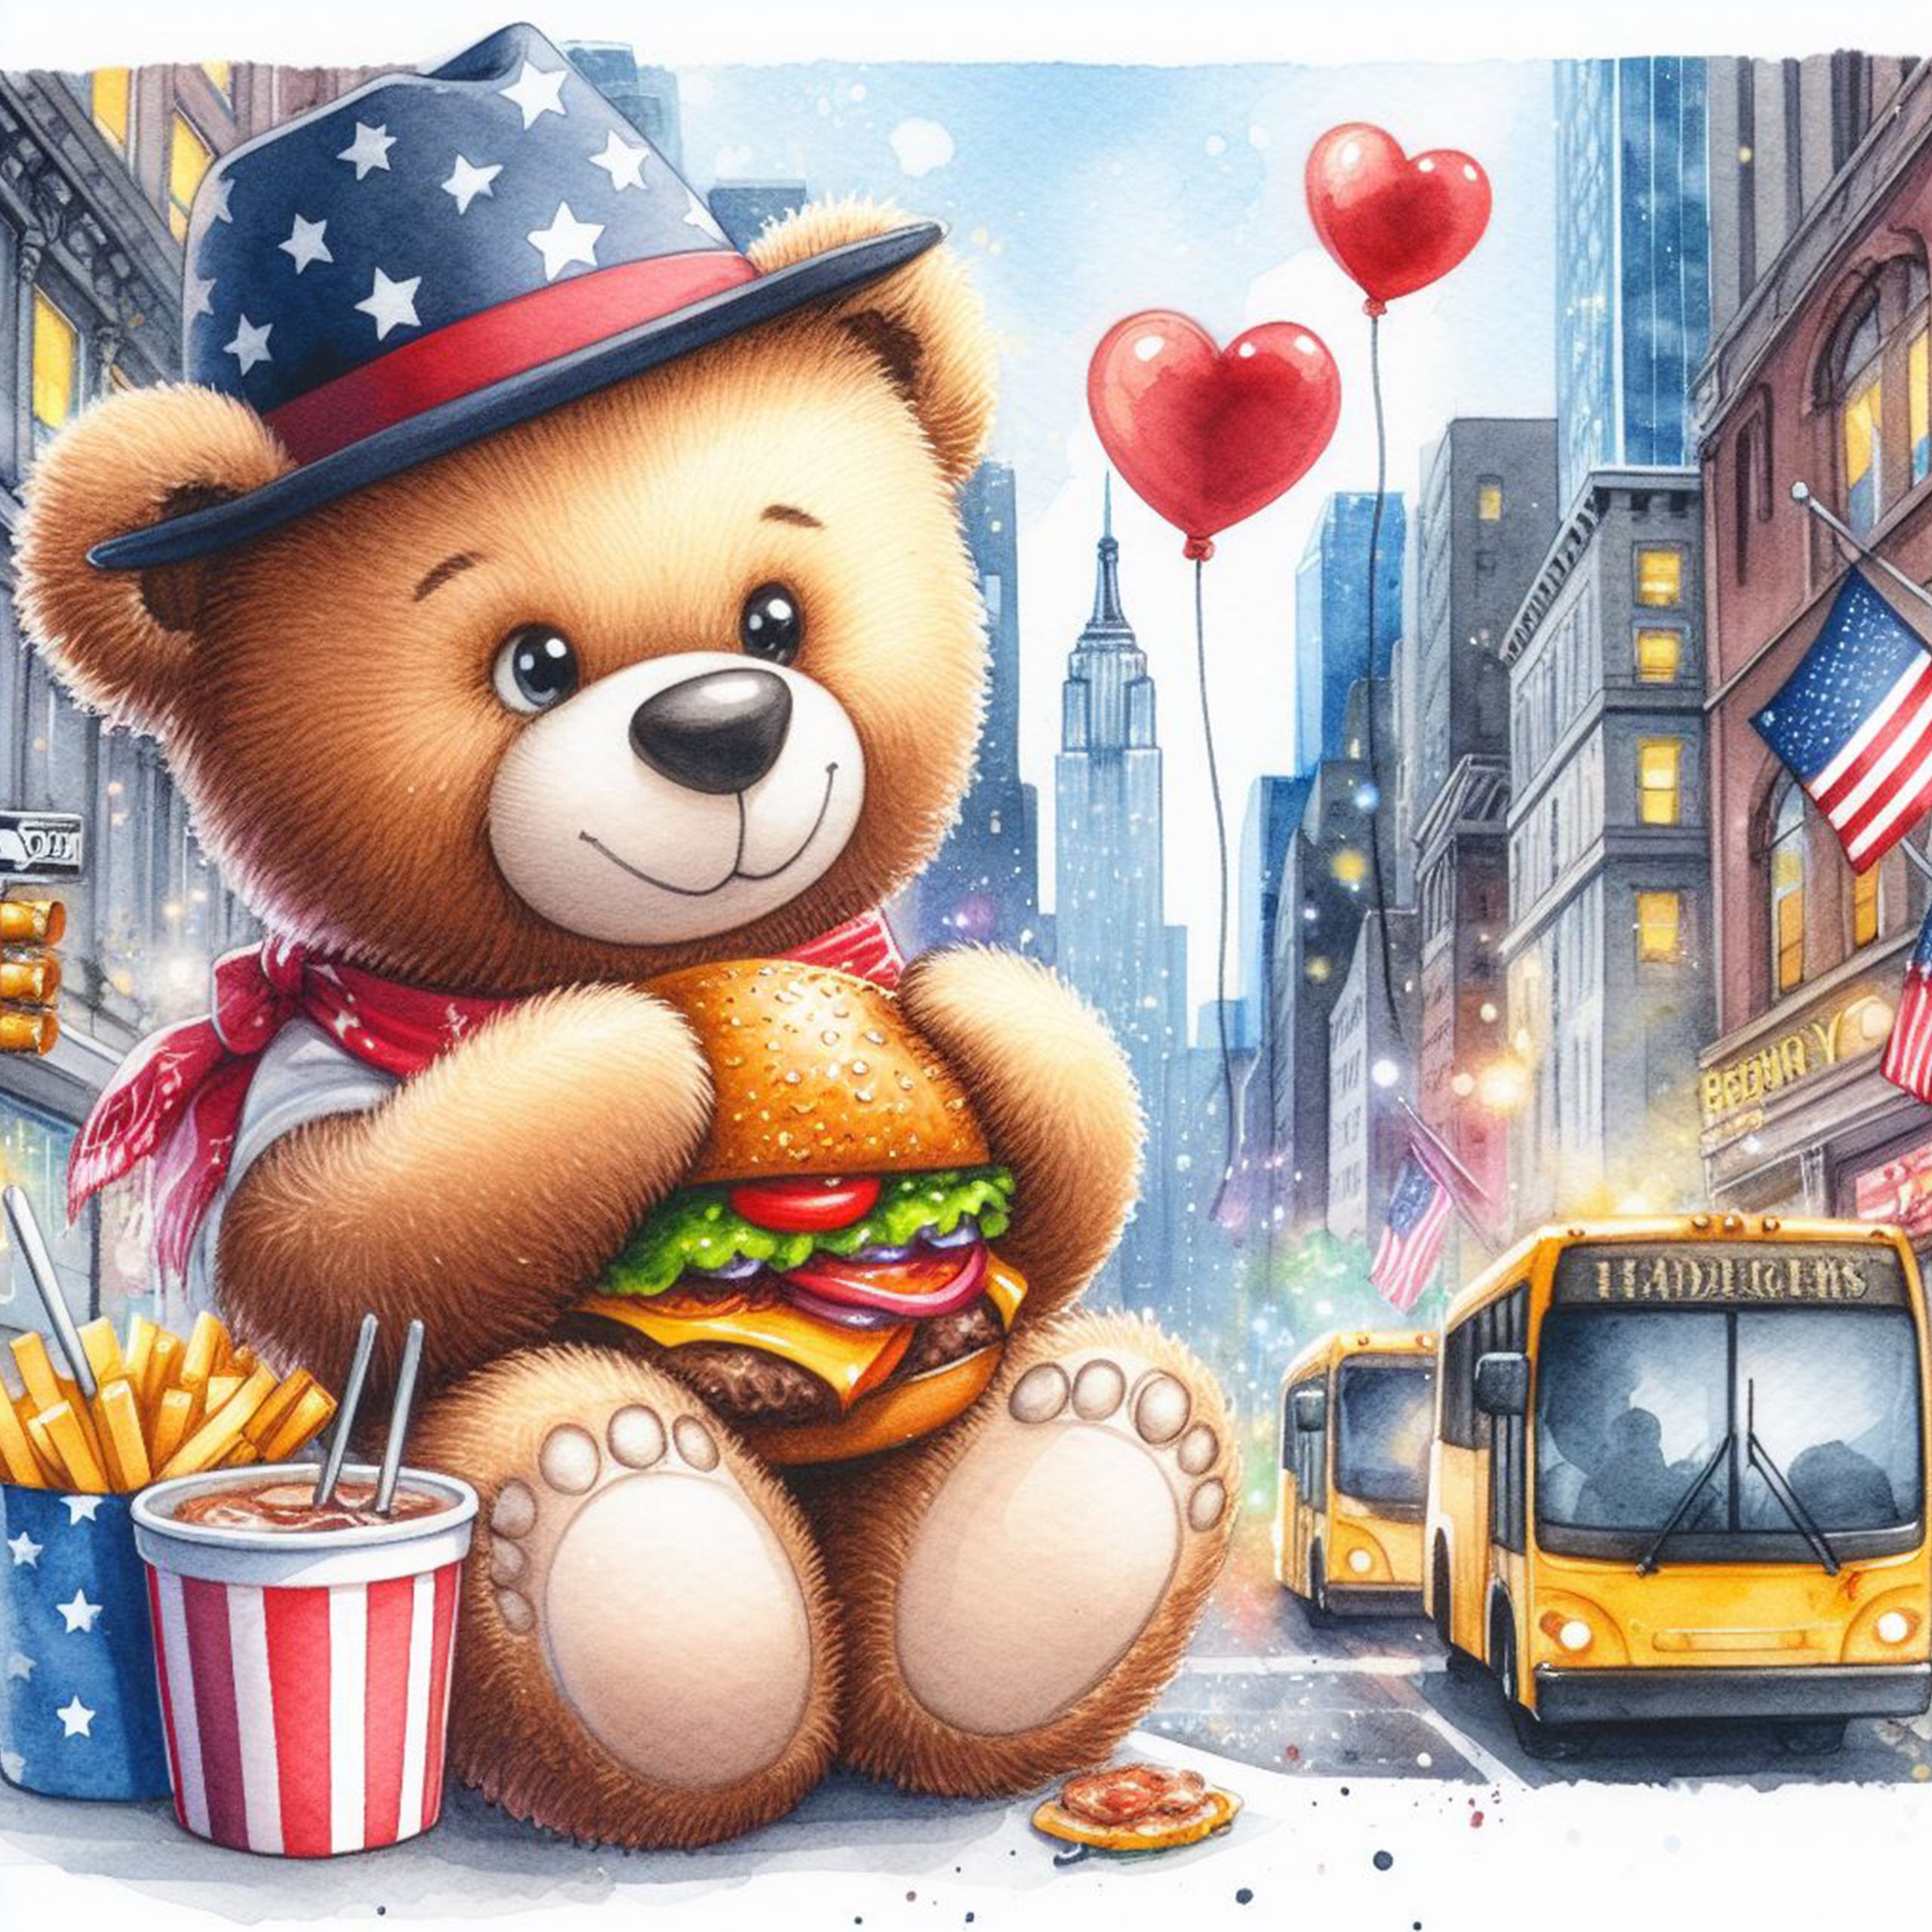 Oso Teddy patriótico comiendo una hamburguesa en Nueva York